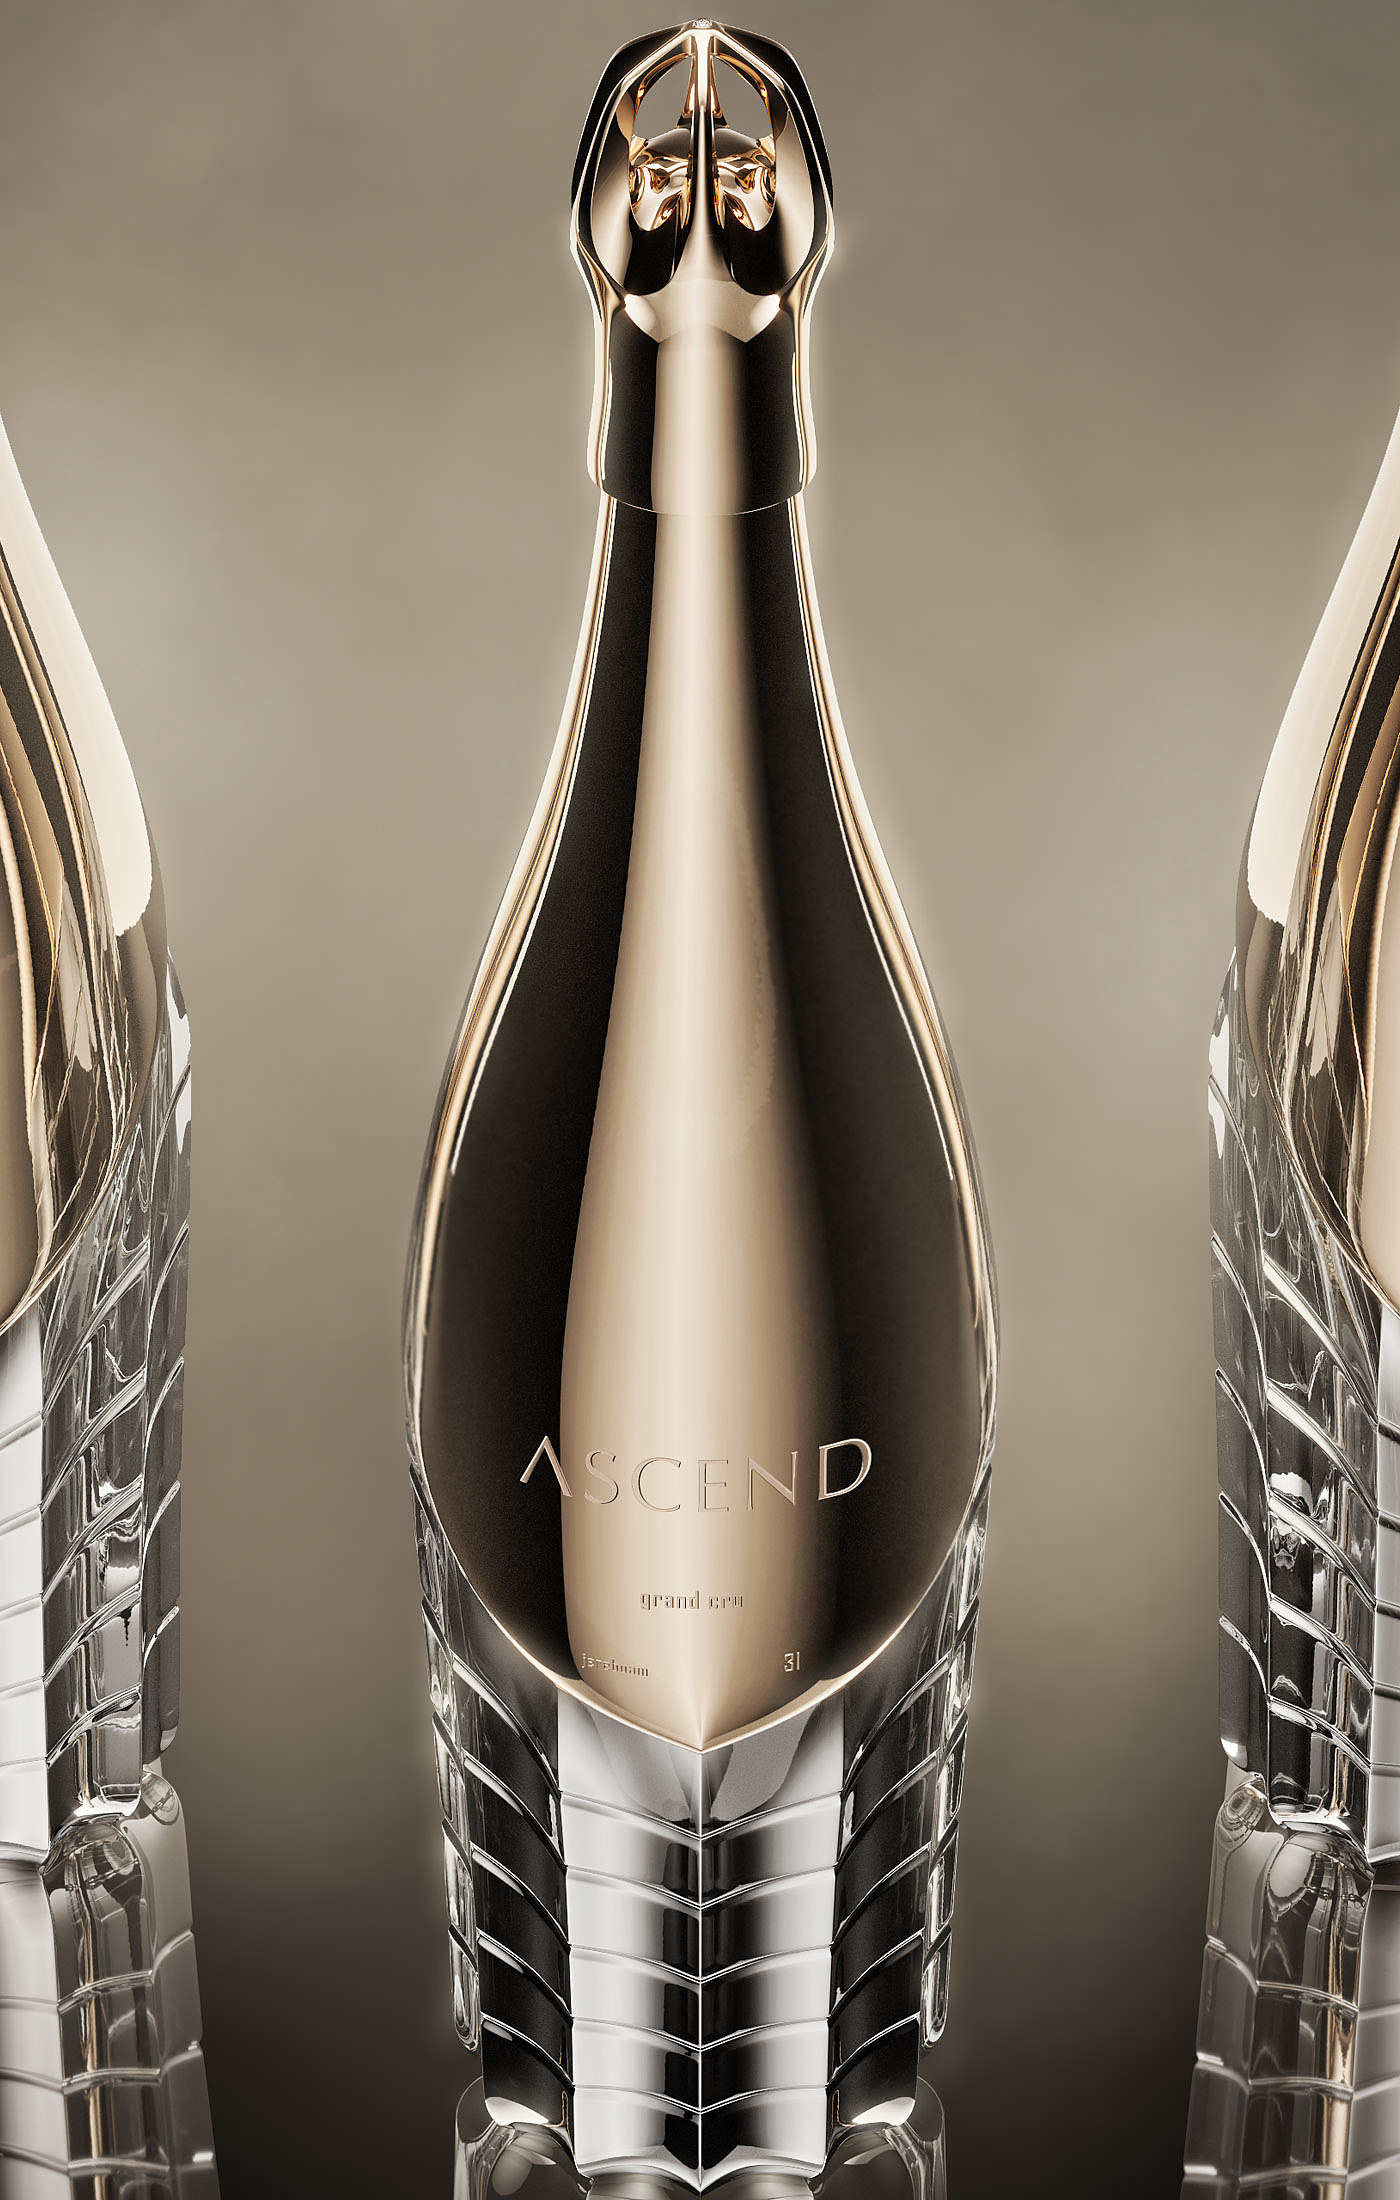 Ascend，香槟，包装设计，